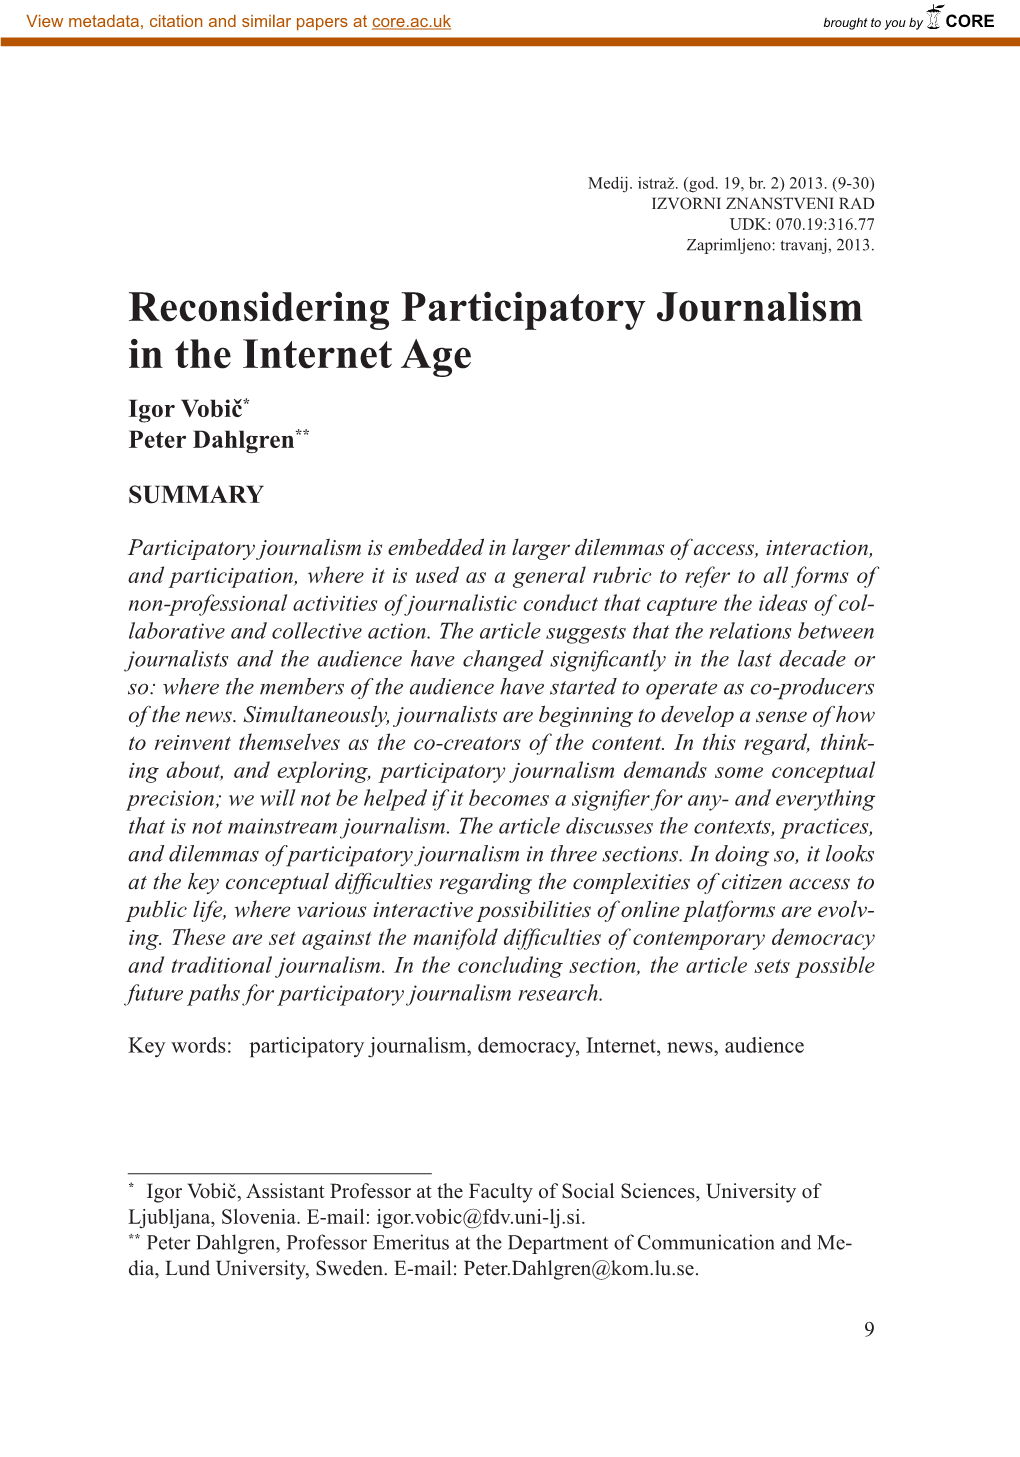 Reconsidering Participatory Journalism in the Internet Age Igor Vobič* Peter Dahlgren**